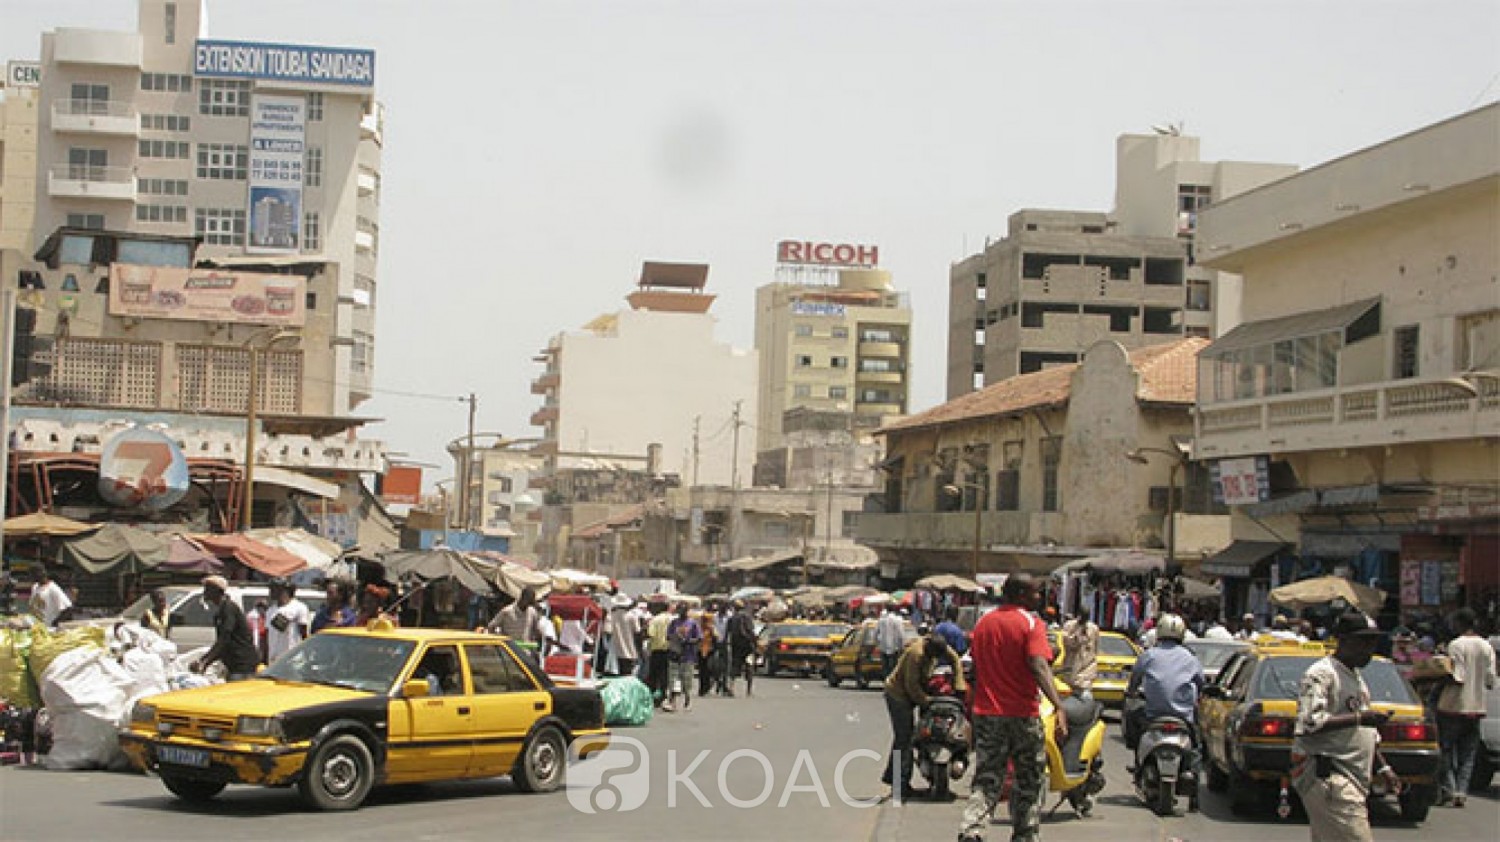 Sénégal: Hausse du prix de l'électricité, les Sénégalais en colère invitent l'Etat à réduire son train de vie